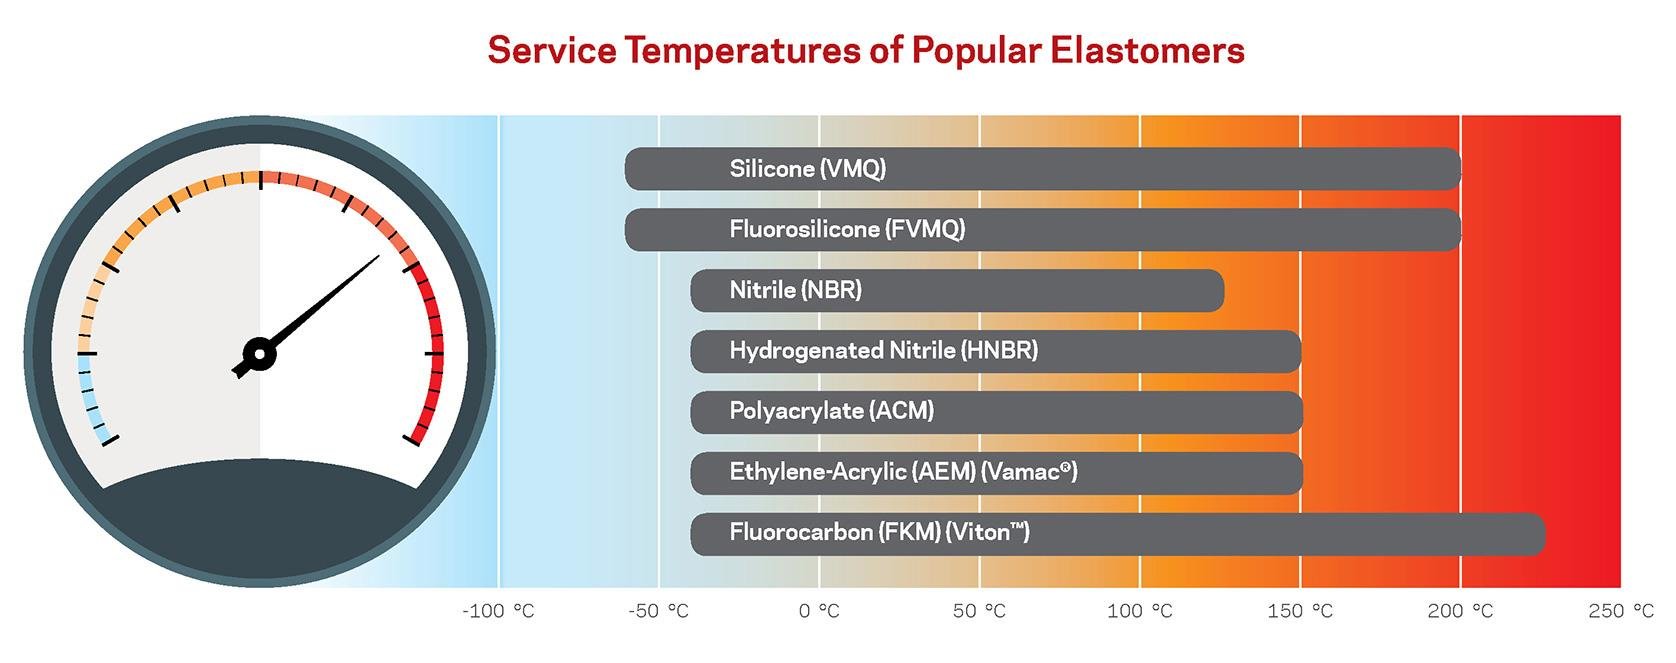 Temperaturas de servicio de elastómeros populares